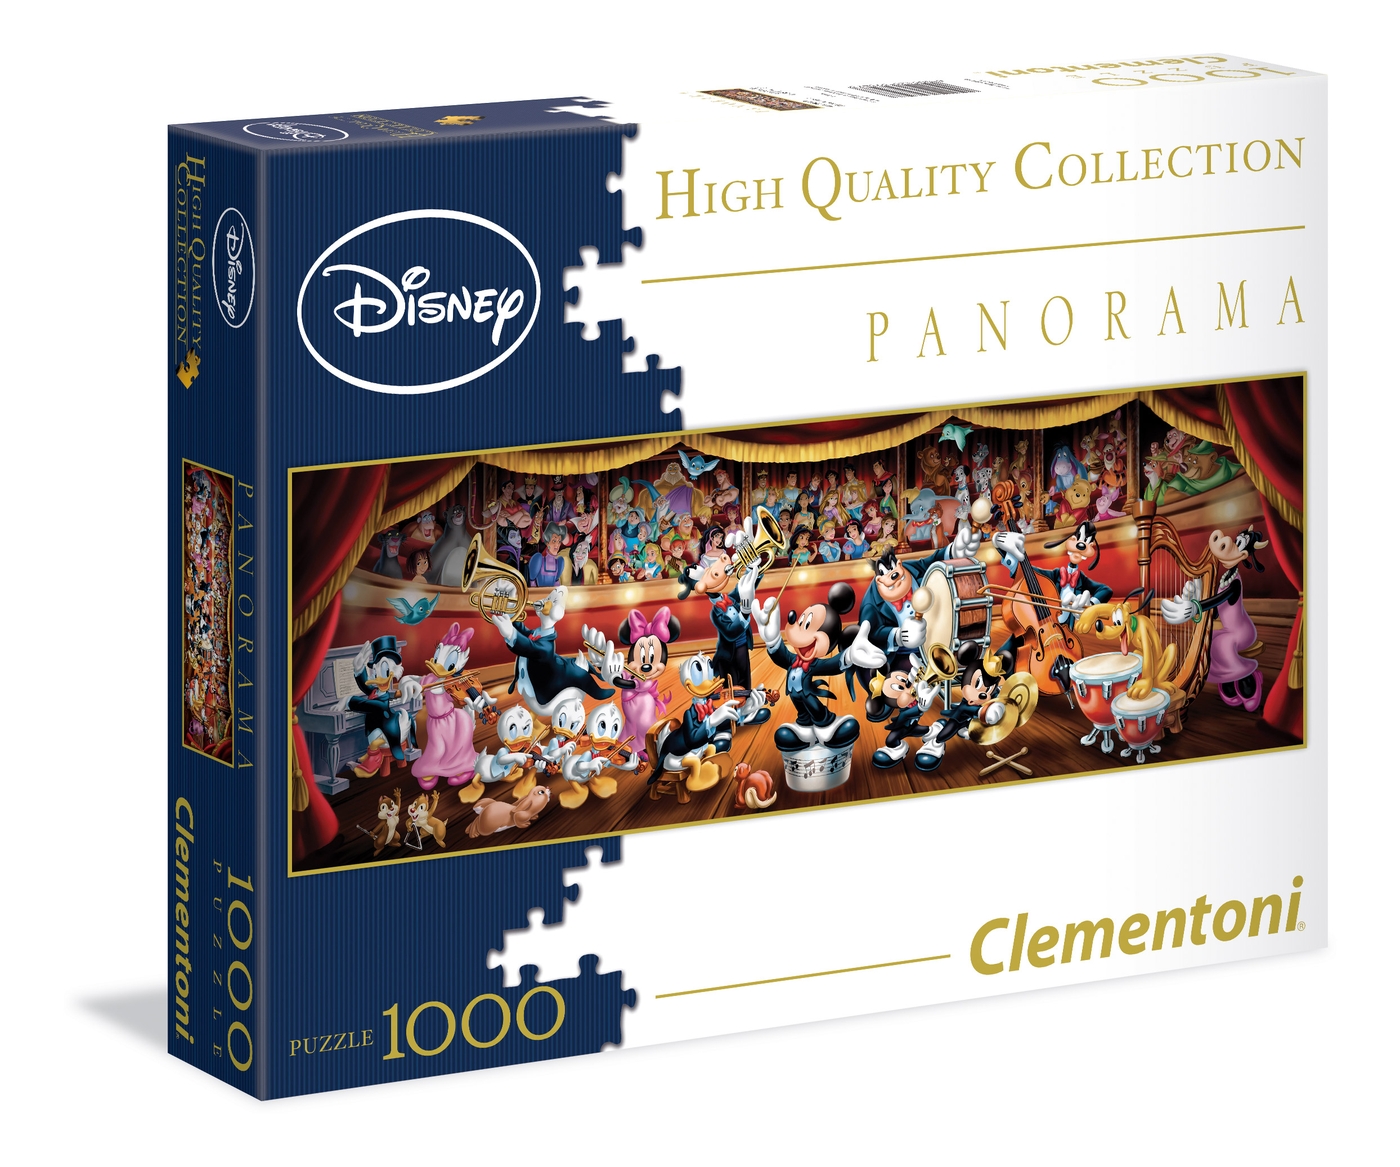 Clementoni Kinderpuzzle 104 Teile Disney Minnie Mouse 27953 